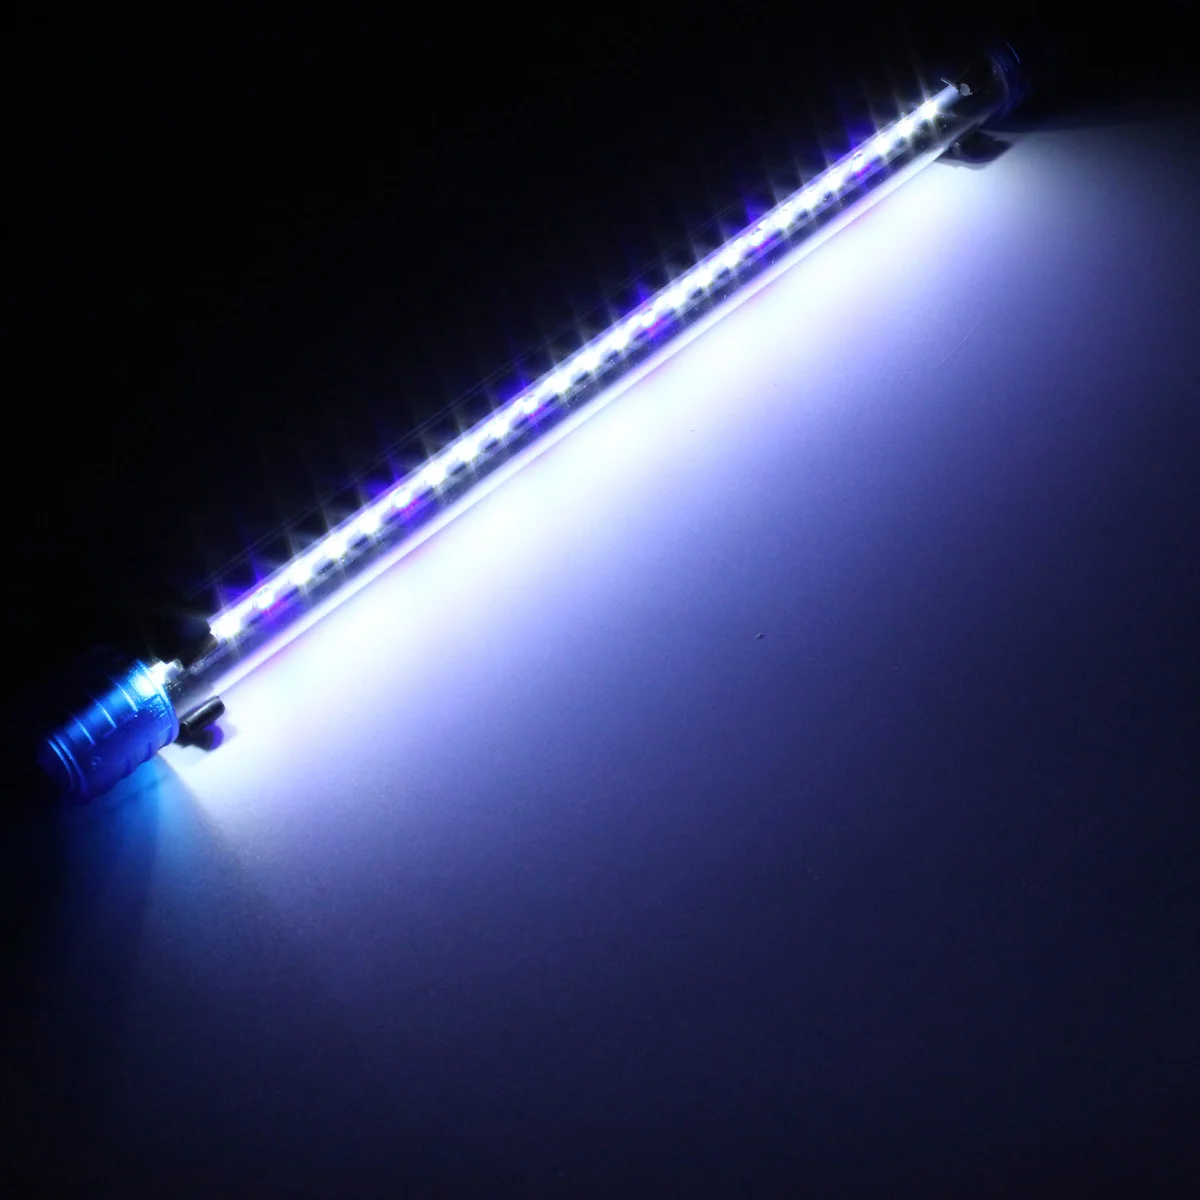 Аквариумный Водонепроницаемый светодиодный светильник, светильник для аквариума, погружной светильник, товары для тропических аквариумов 3 Вт 30 см, AC220V - Испускаемый цвет: Blue and white light